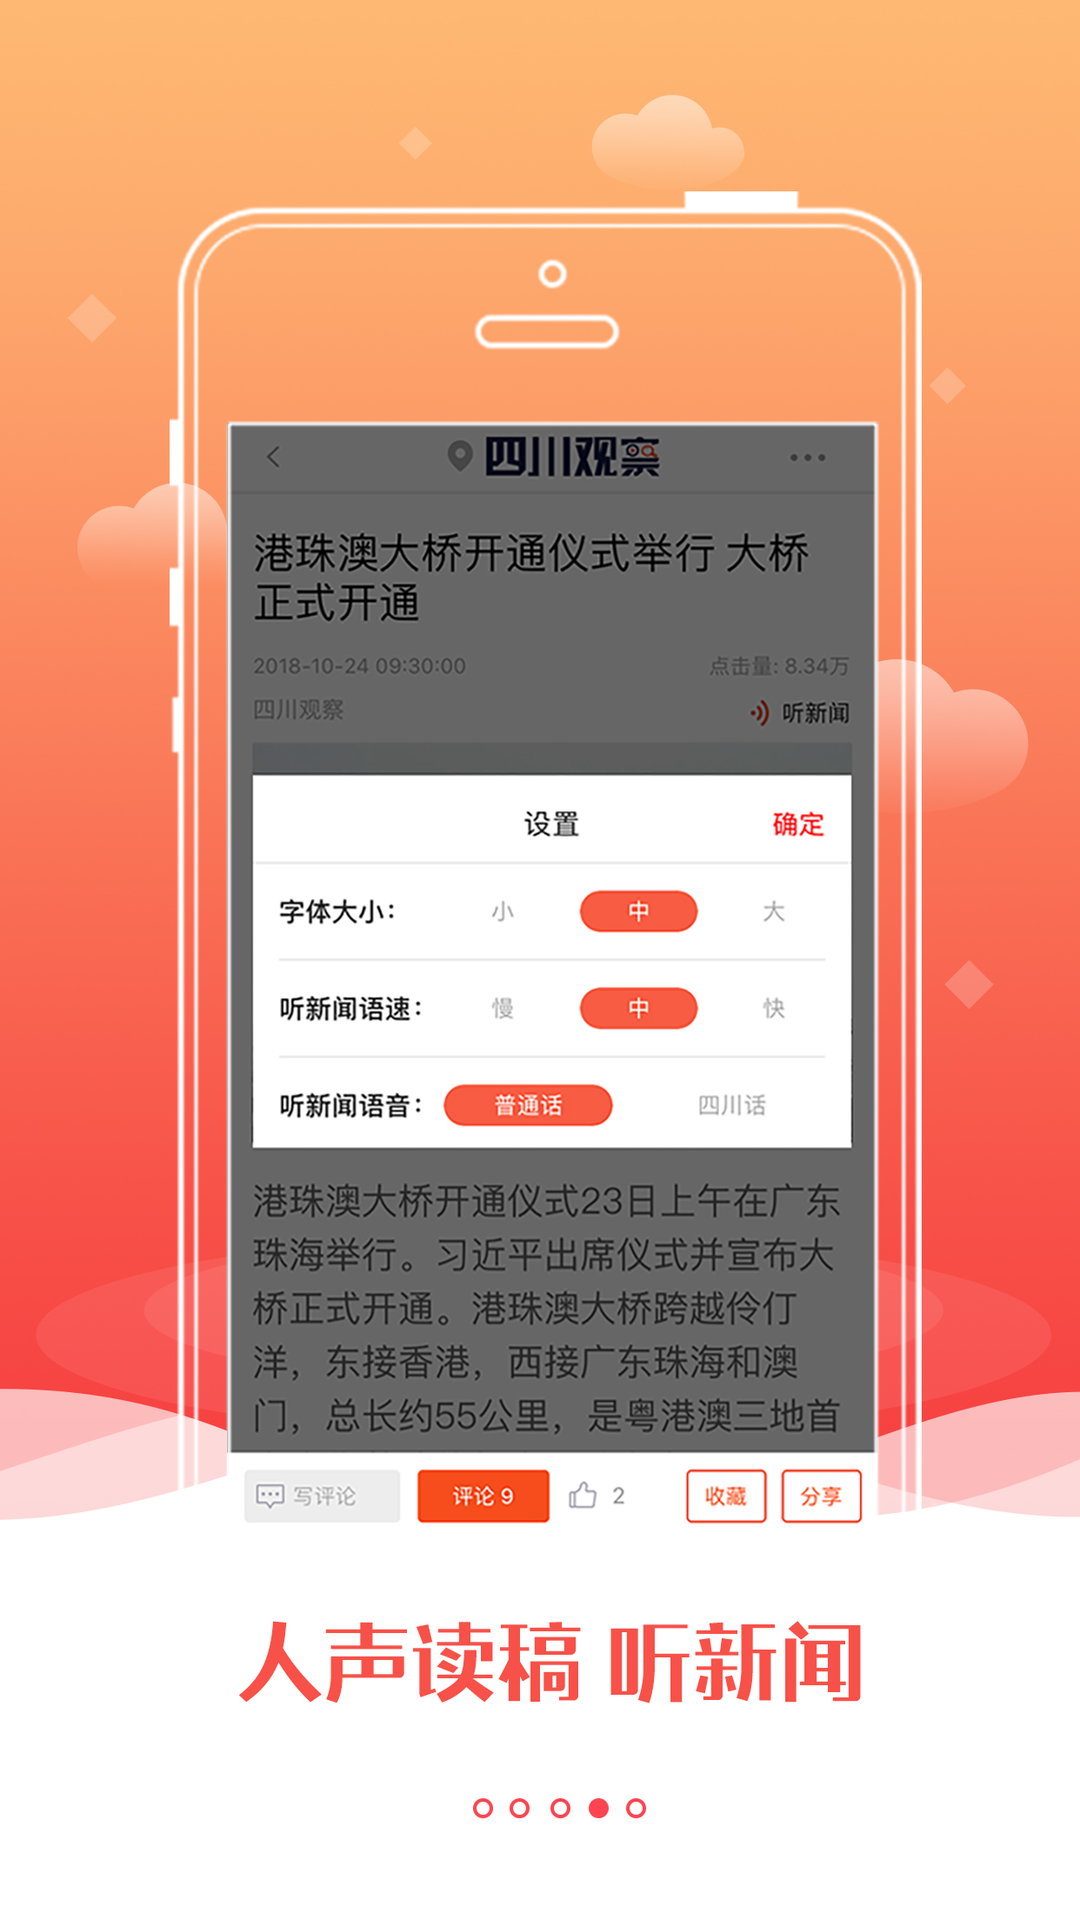 四川观察官方app最新版客户端图片1